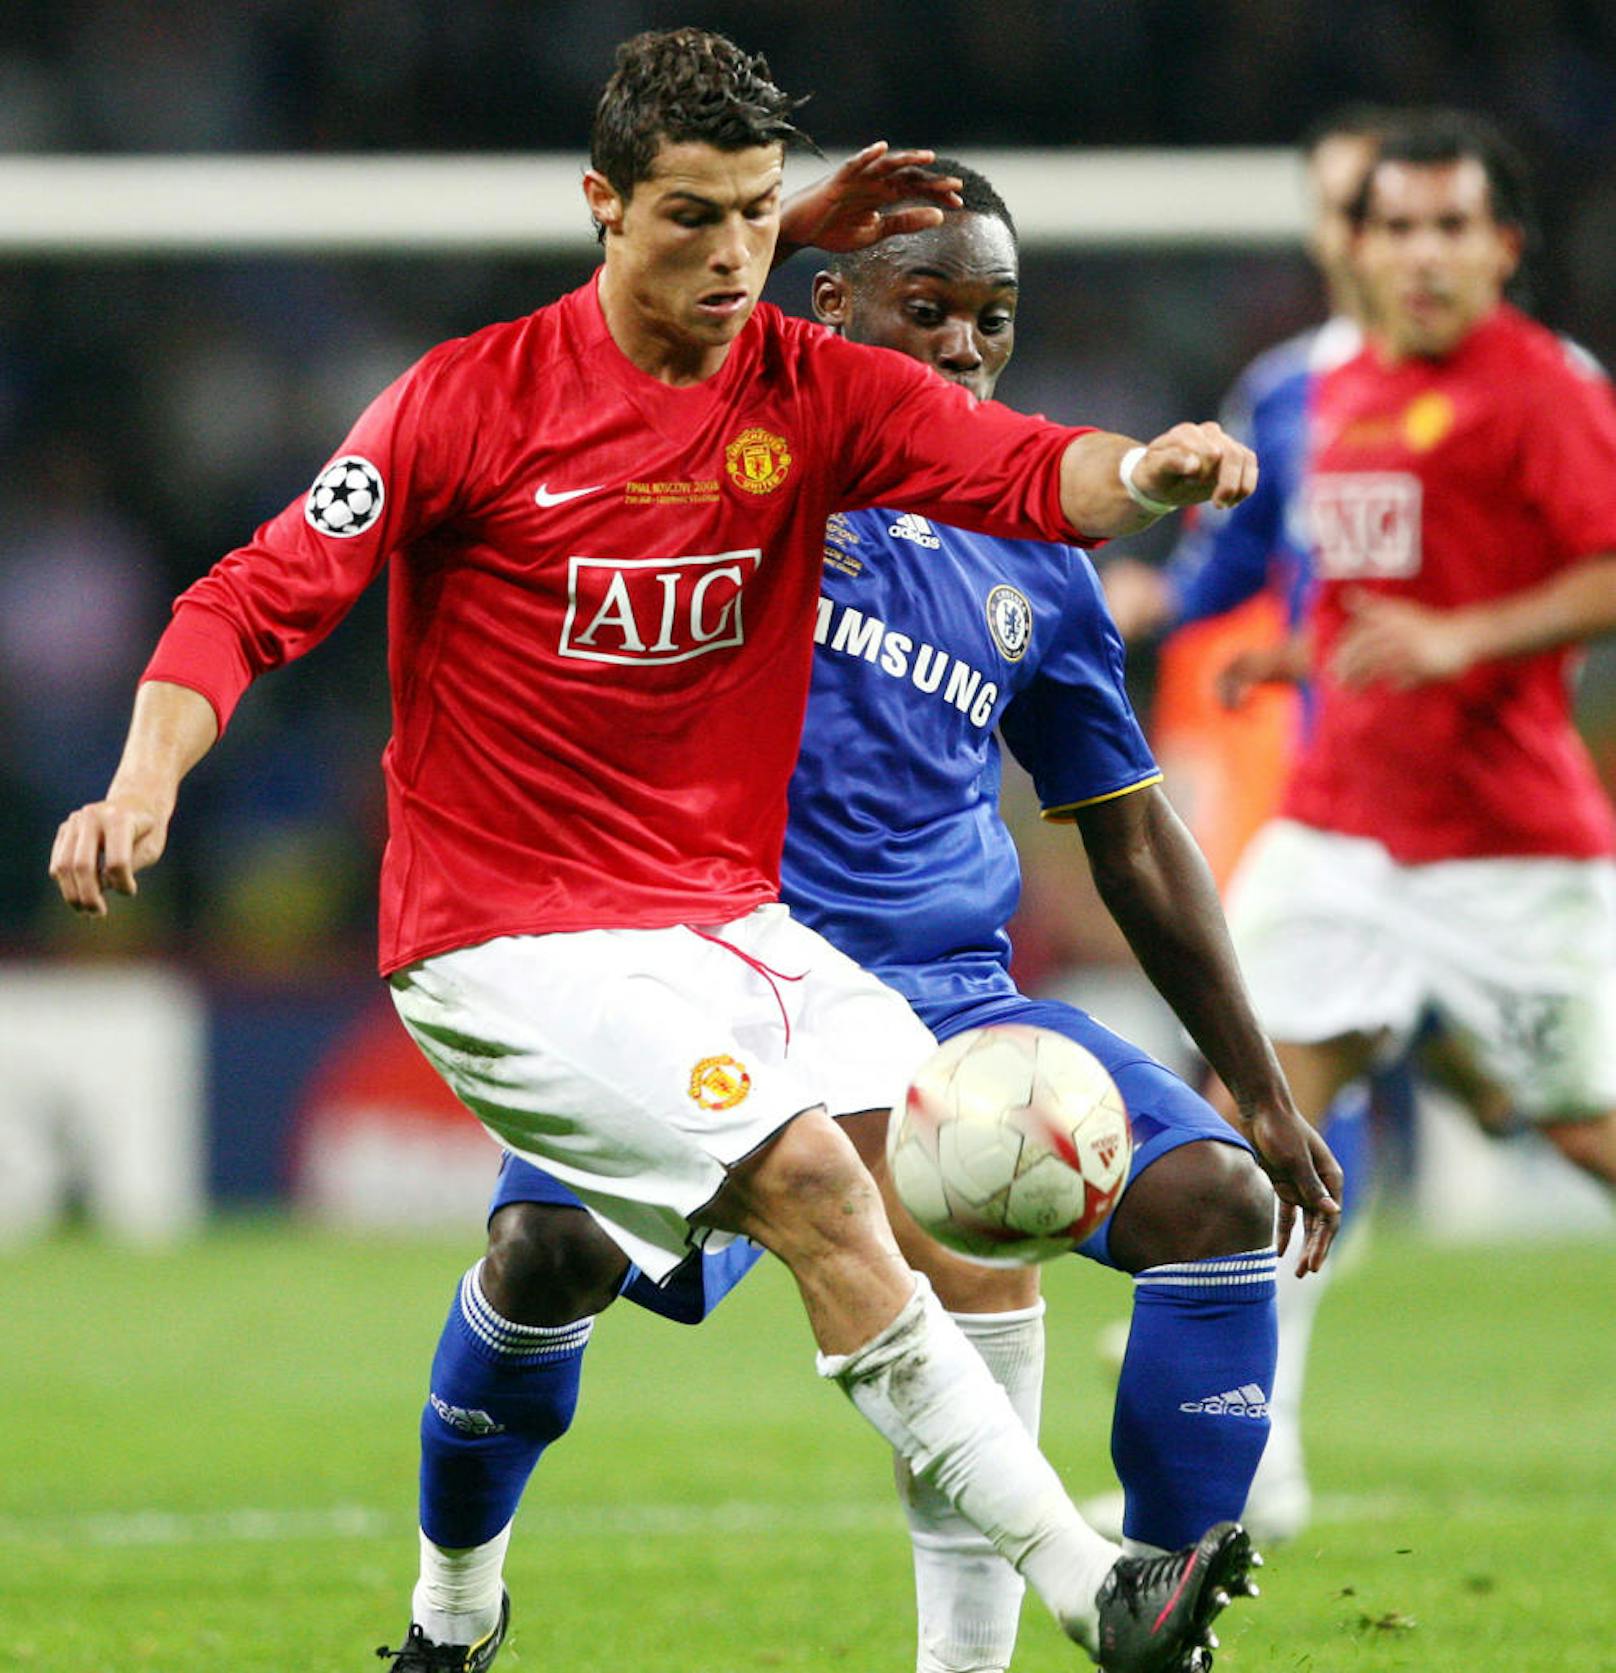 2008 trat erstmals ein gewisser Cristiano Ronaldo in Erscheinung. Manchester United setzte sich in einem spannenden Endspiel gegen Chelsea erst im Elferschießen durch.